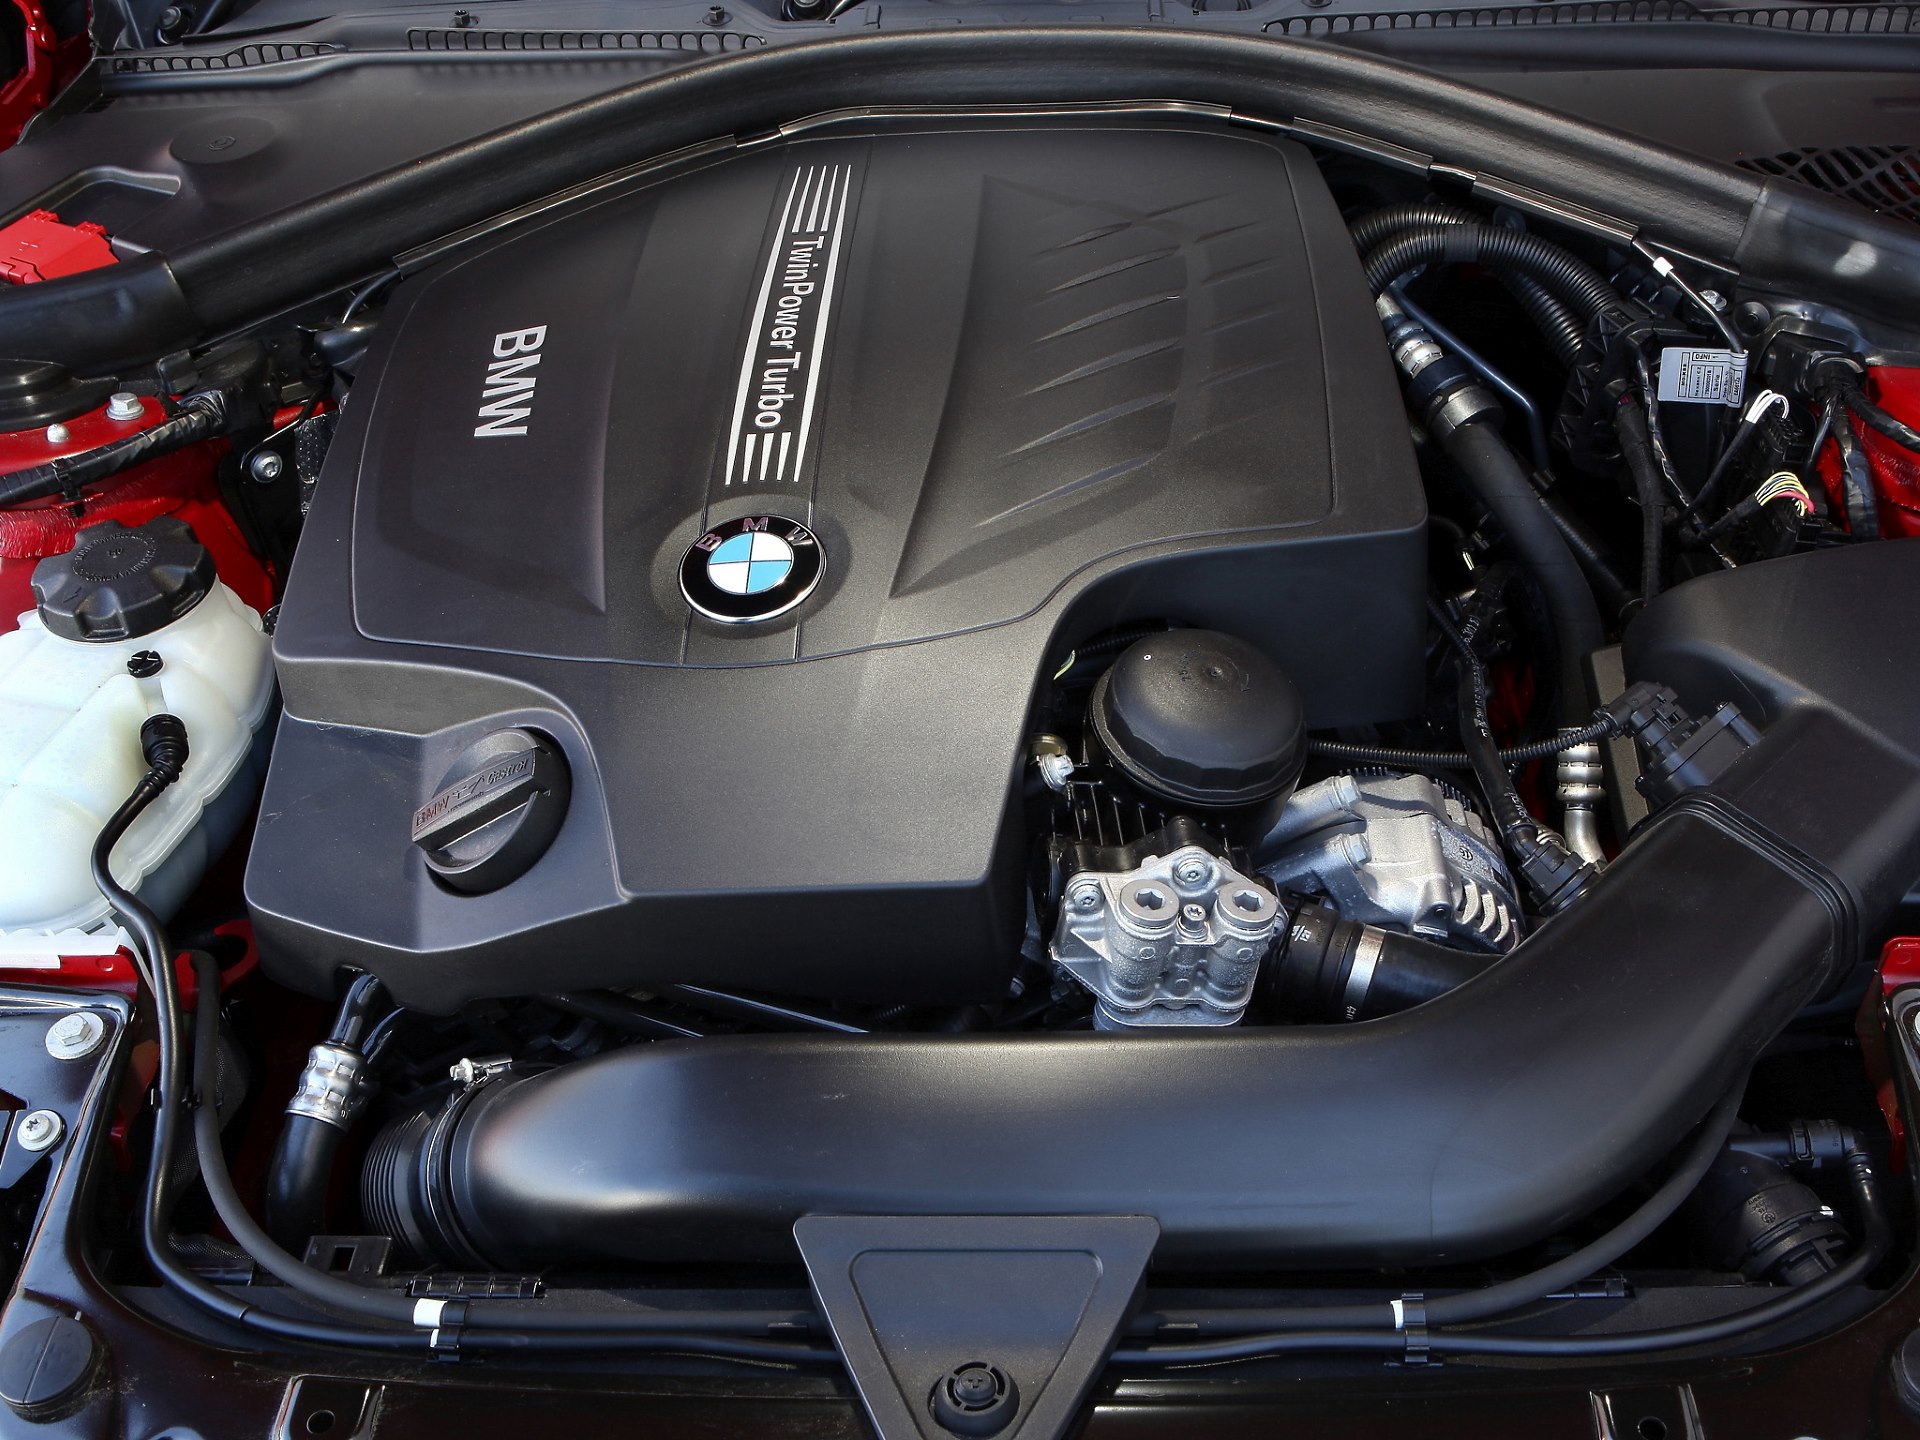 BMW serii 3 (F30) jakie są typowe usterki i awarie?